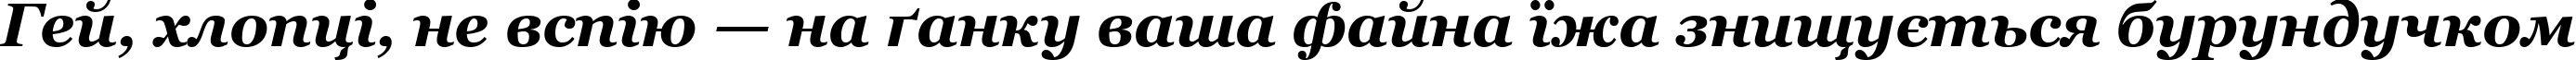 Пример написания шрифтом font278 текста на украинском